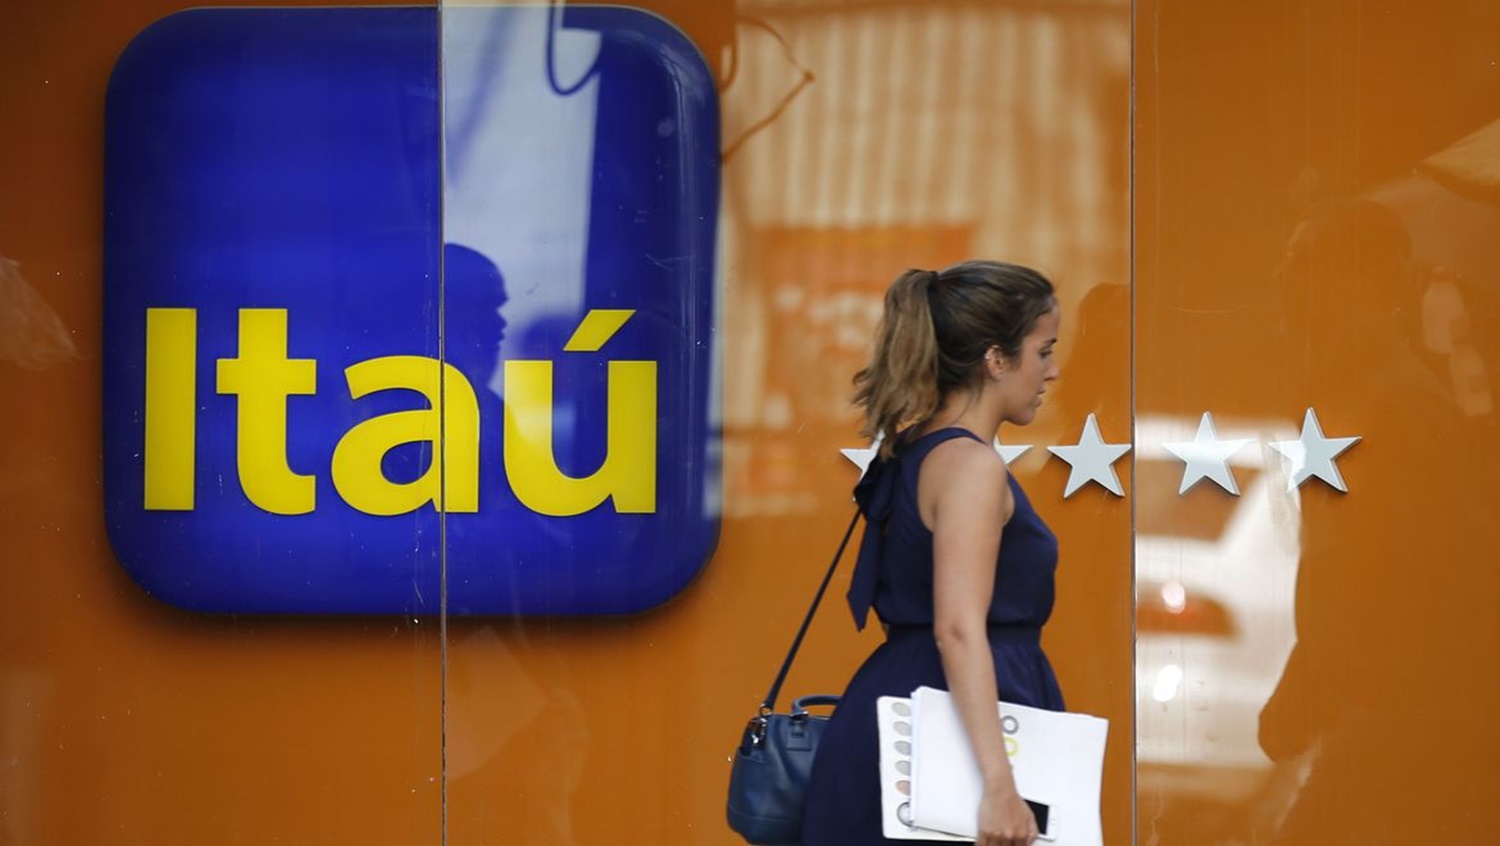 JUSTIÇA: Banco Itaú é notificado por falhas em aplicativos e plataformas